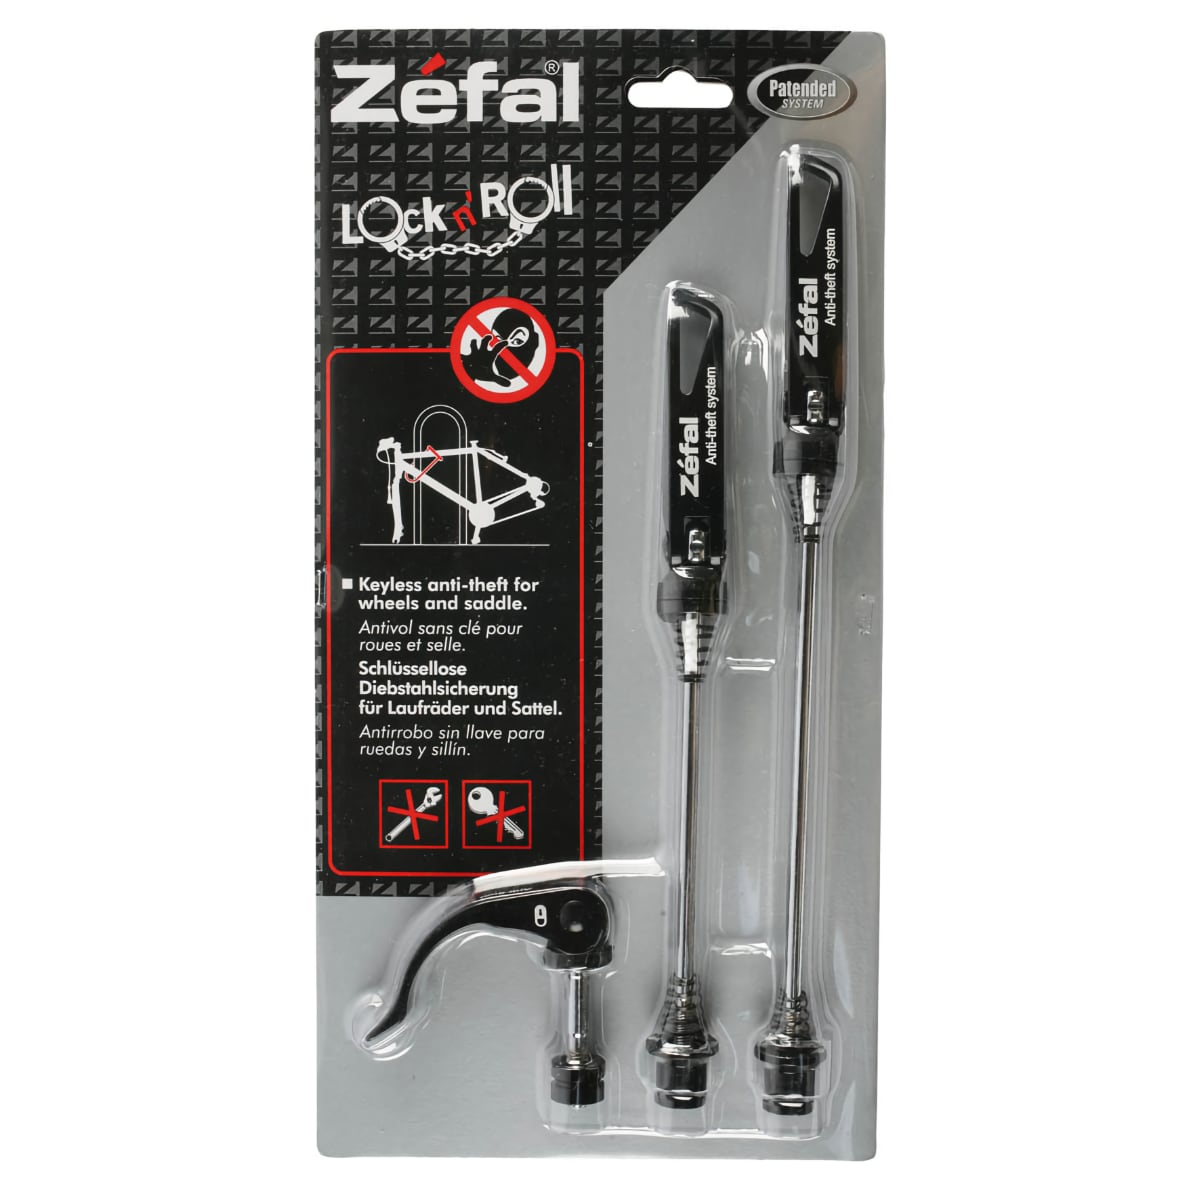 Zefal Lock'n Roll: Le top des antivols pour roues et selle de vélo 